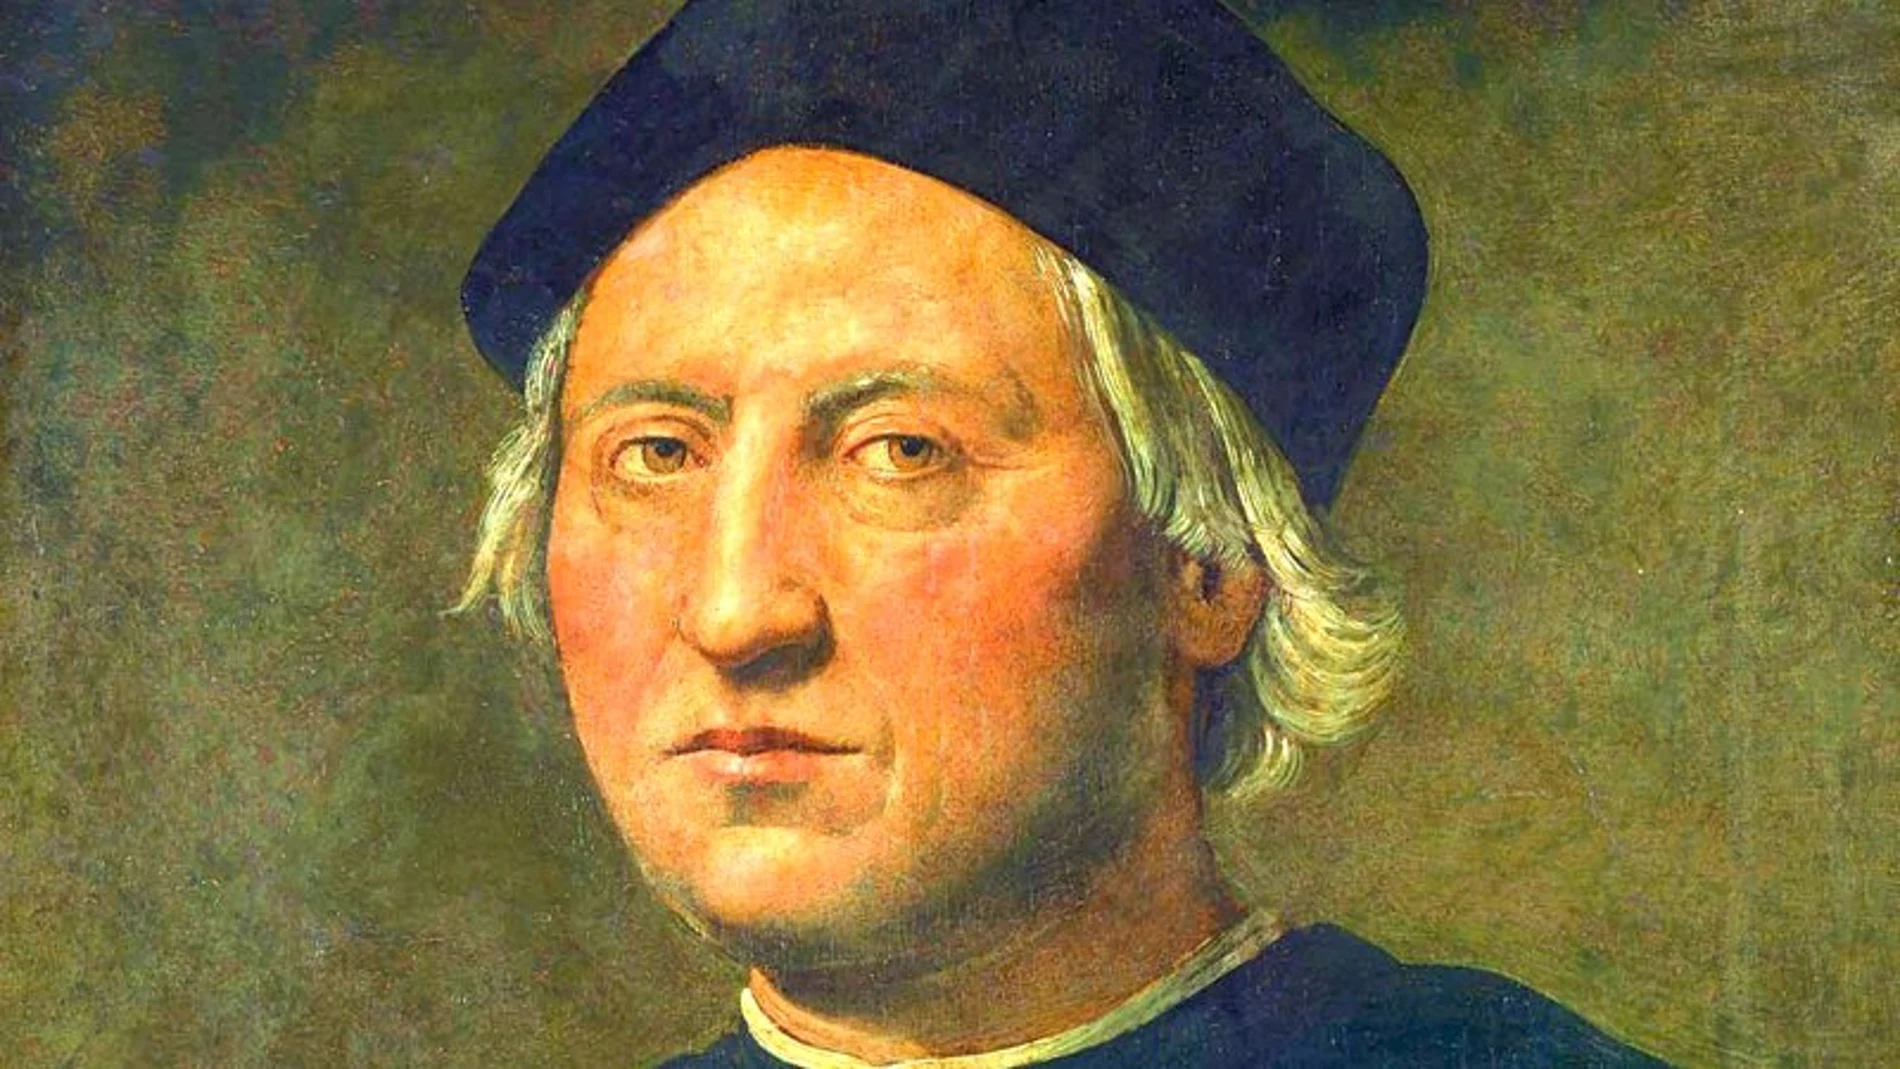 Cristobal Colón